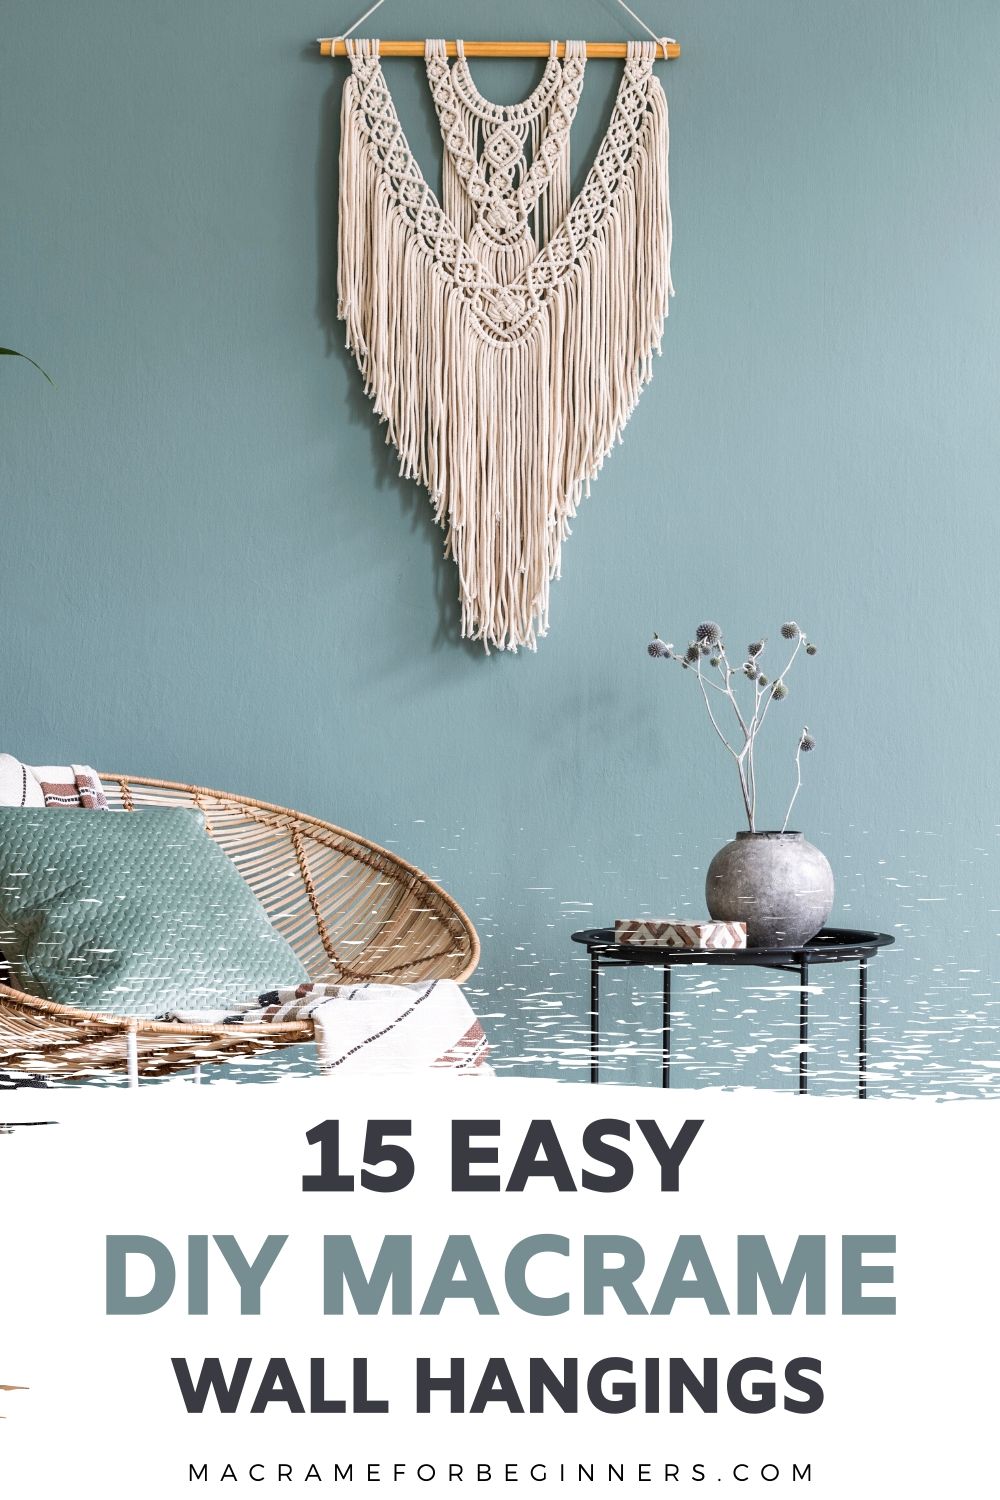 15 DIY Easy Macrame Wall Hangings for Beginners - Macrame For Beginners